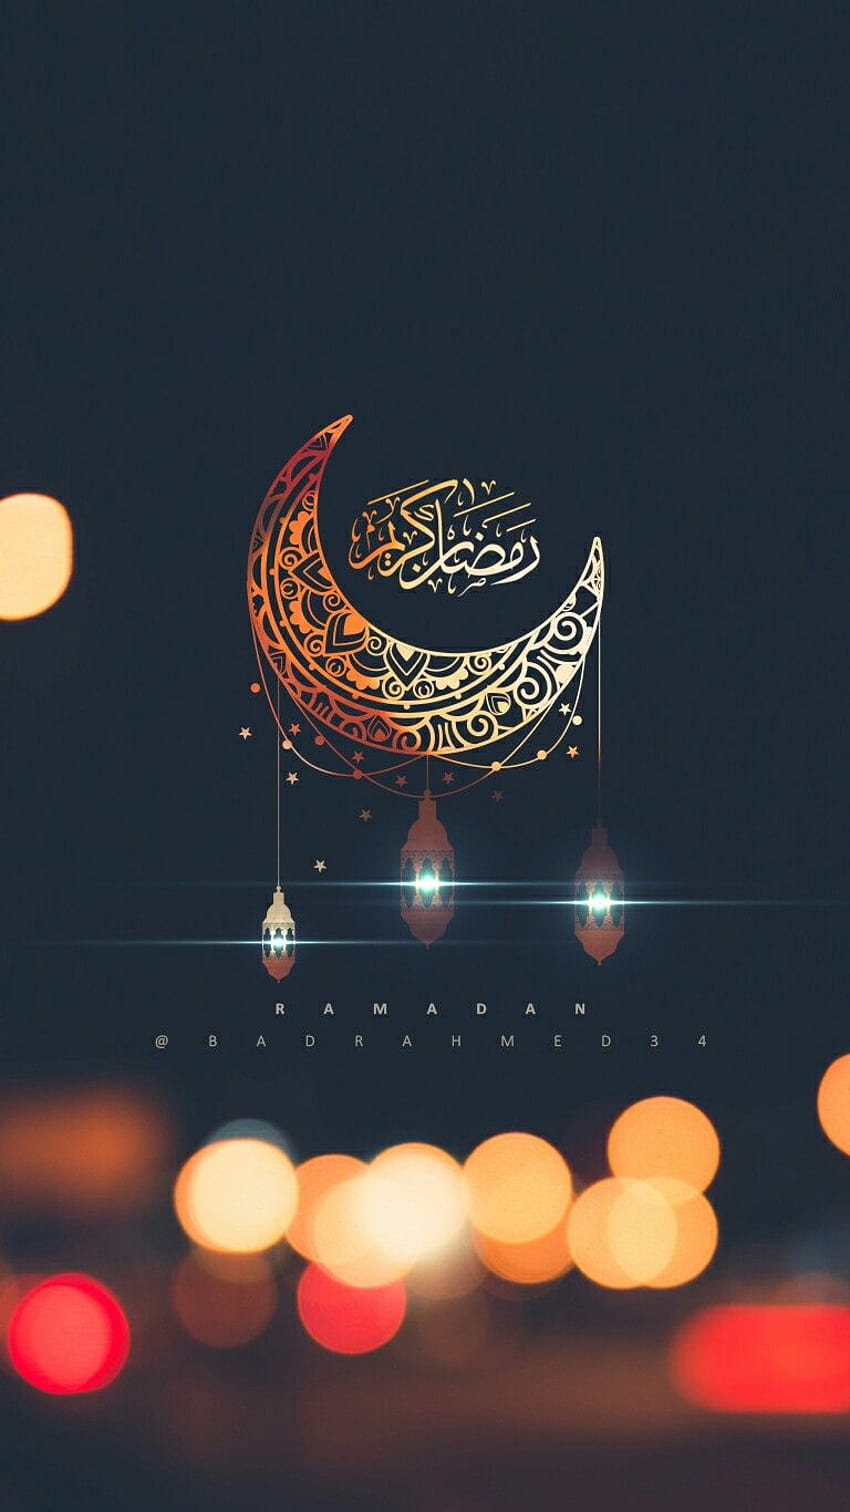 Ramadan kareem backgrounds, ramadan decorations HD phone wallpaper